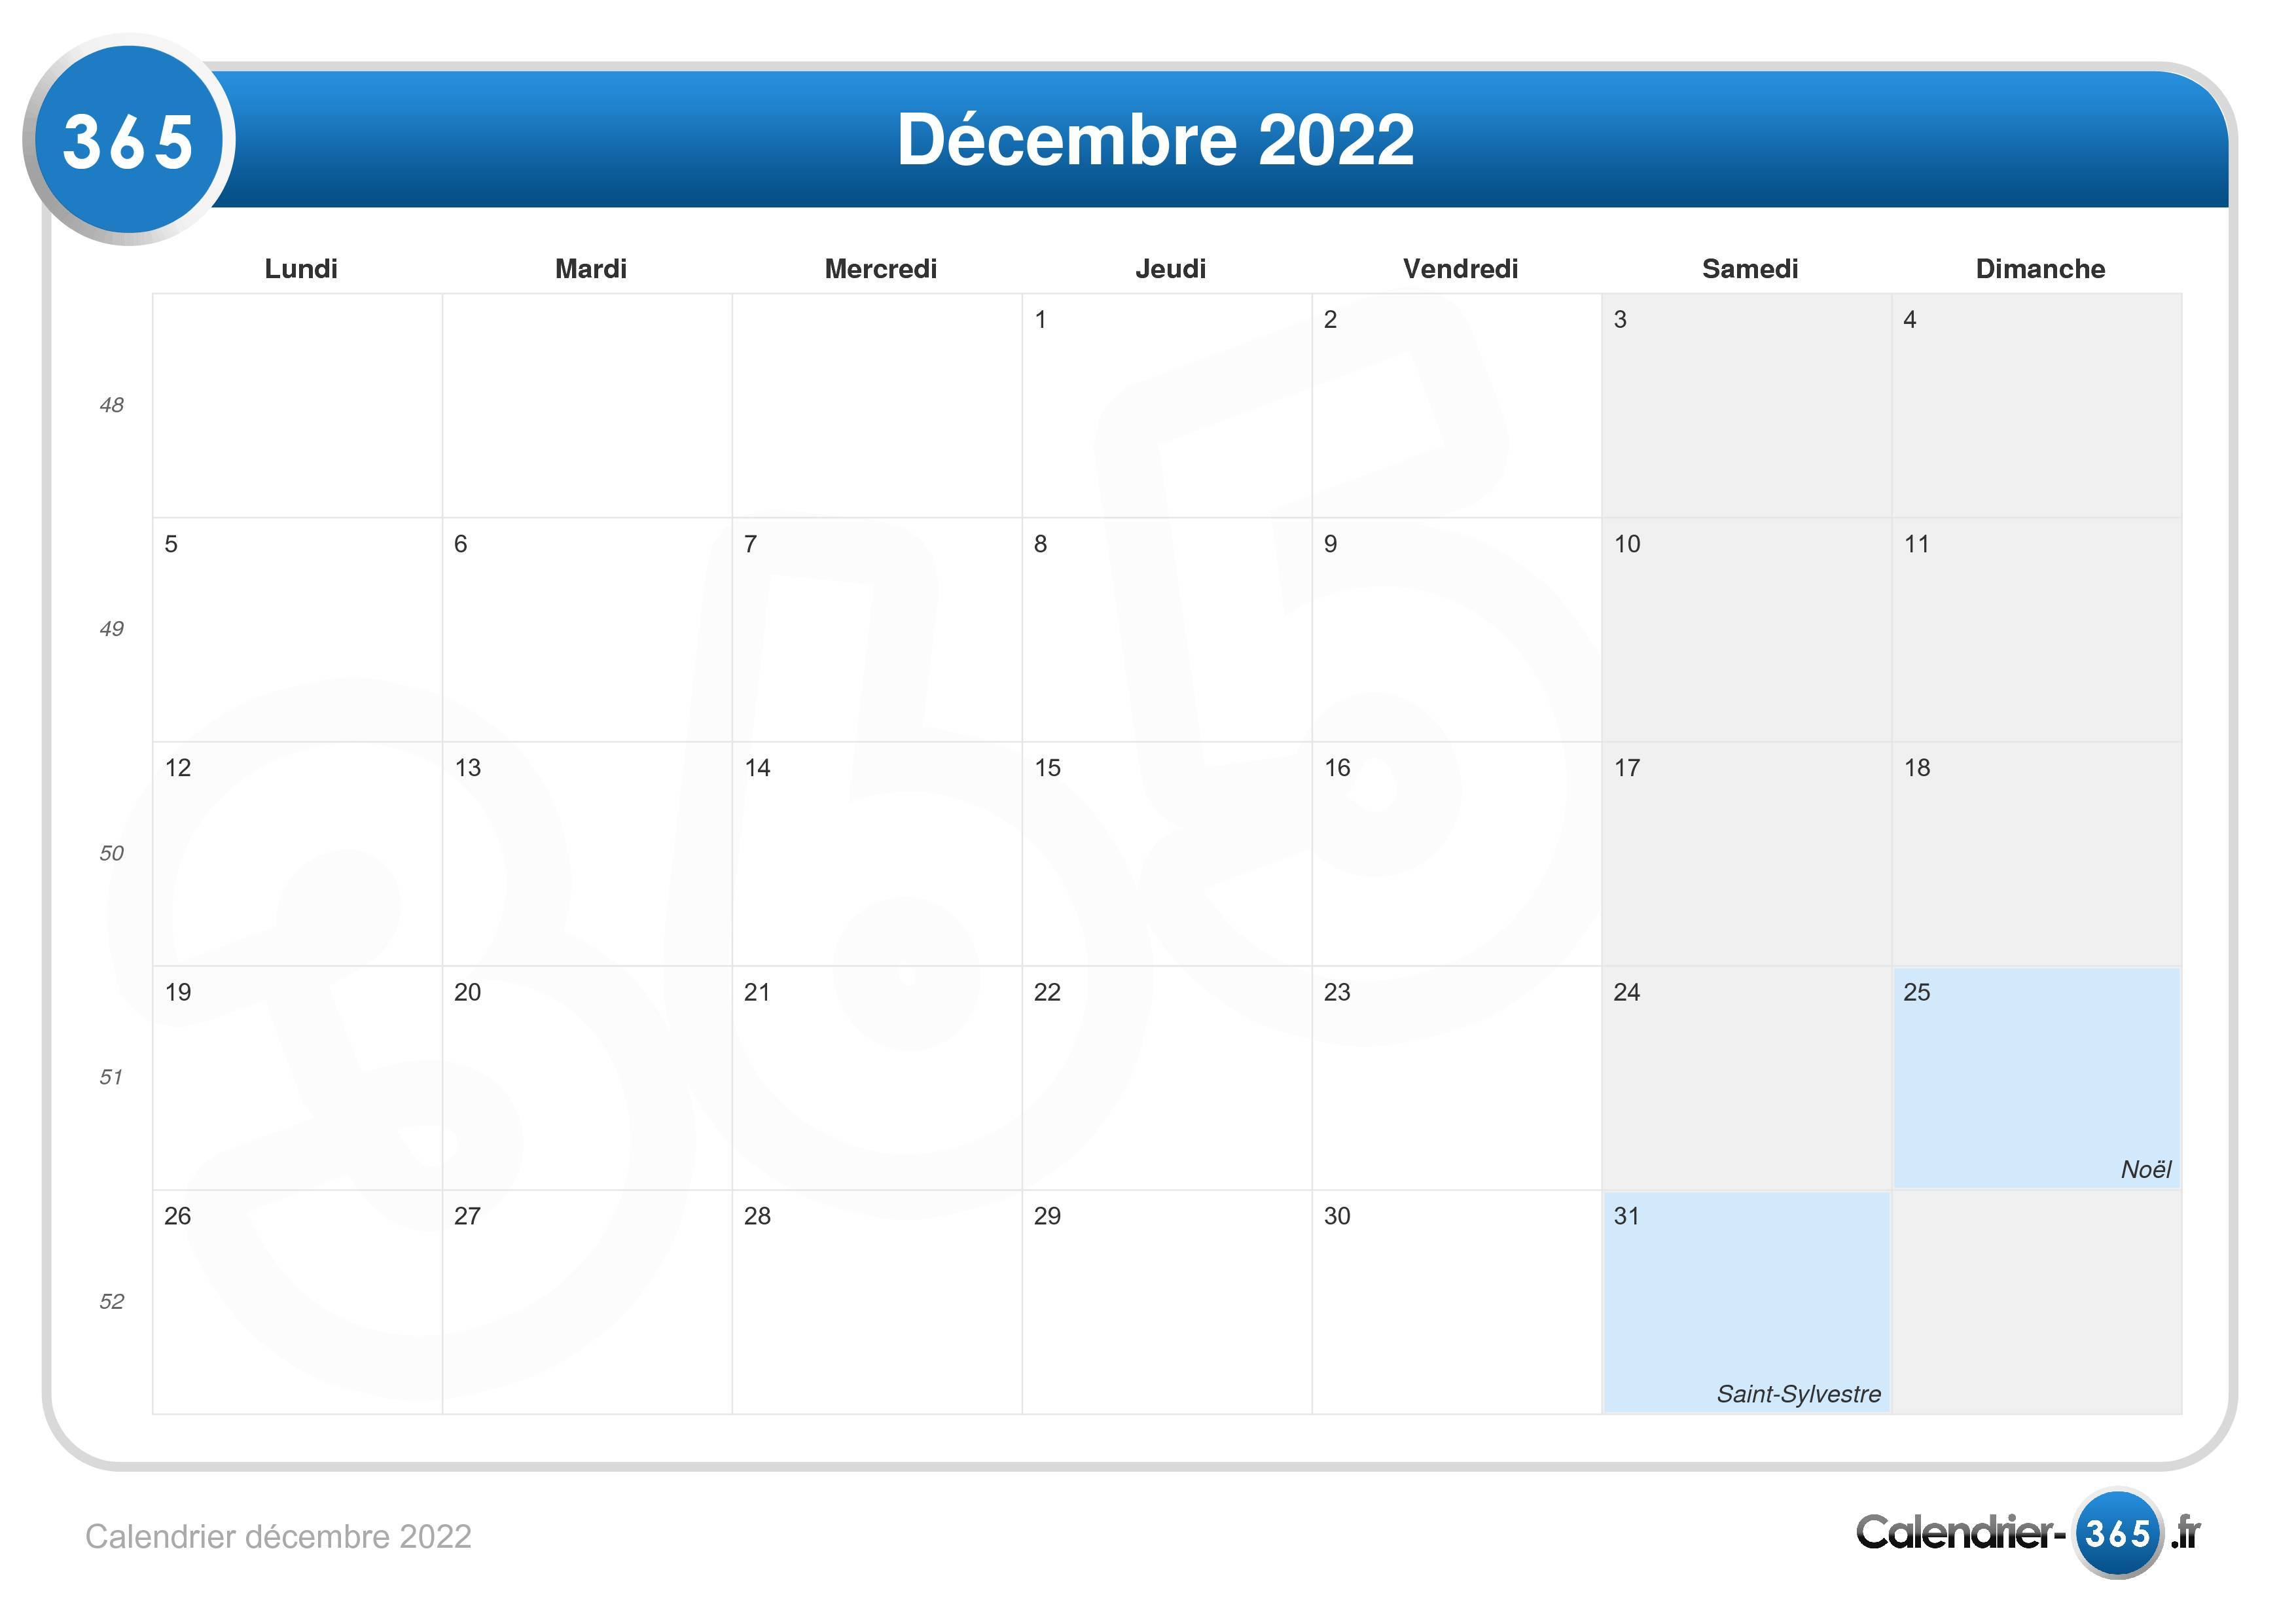 Calendrier Décembre 2022 Calendrier décembre 2022